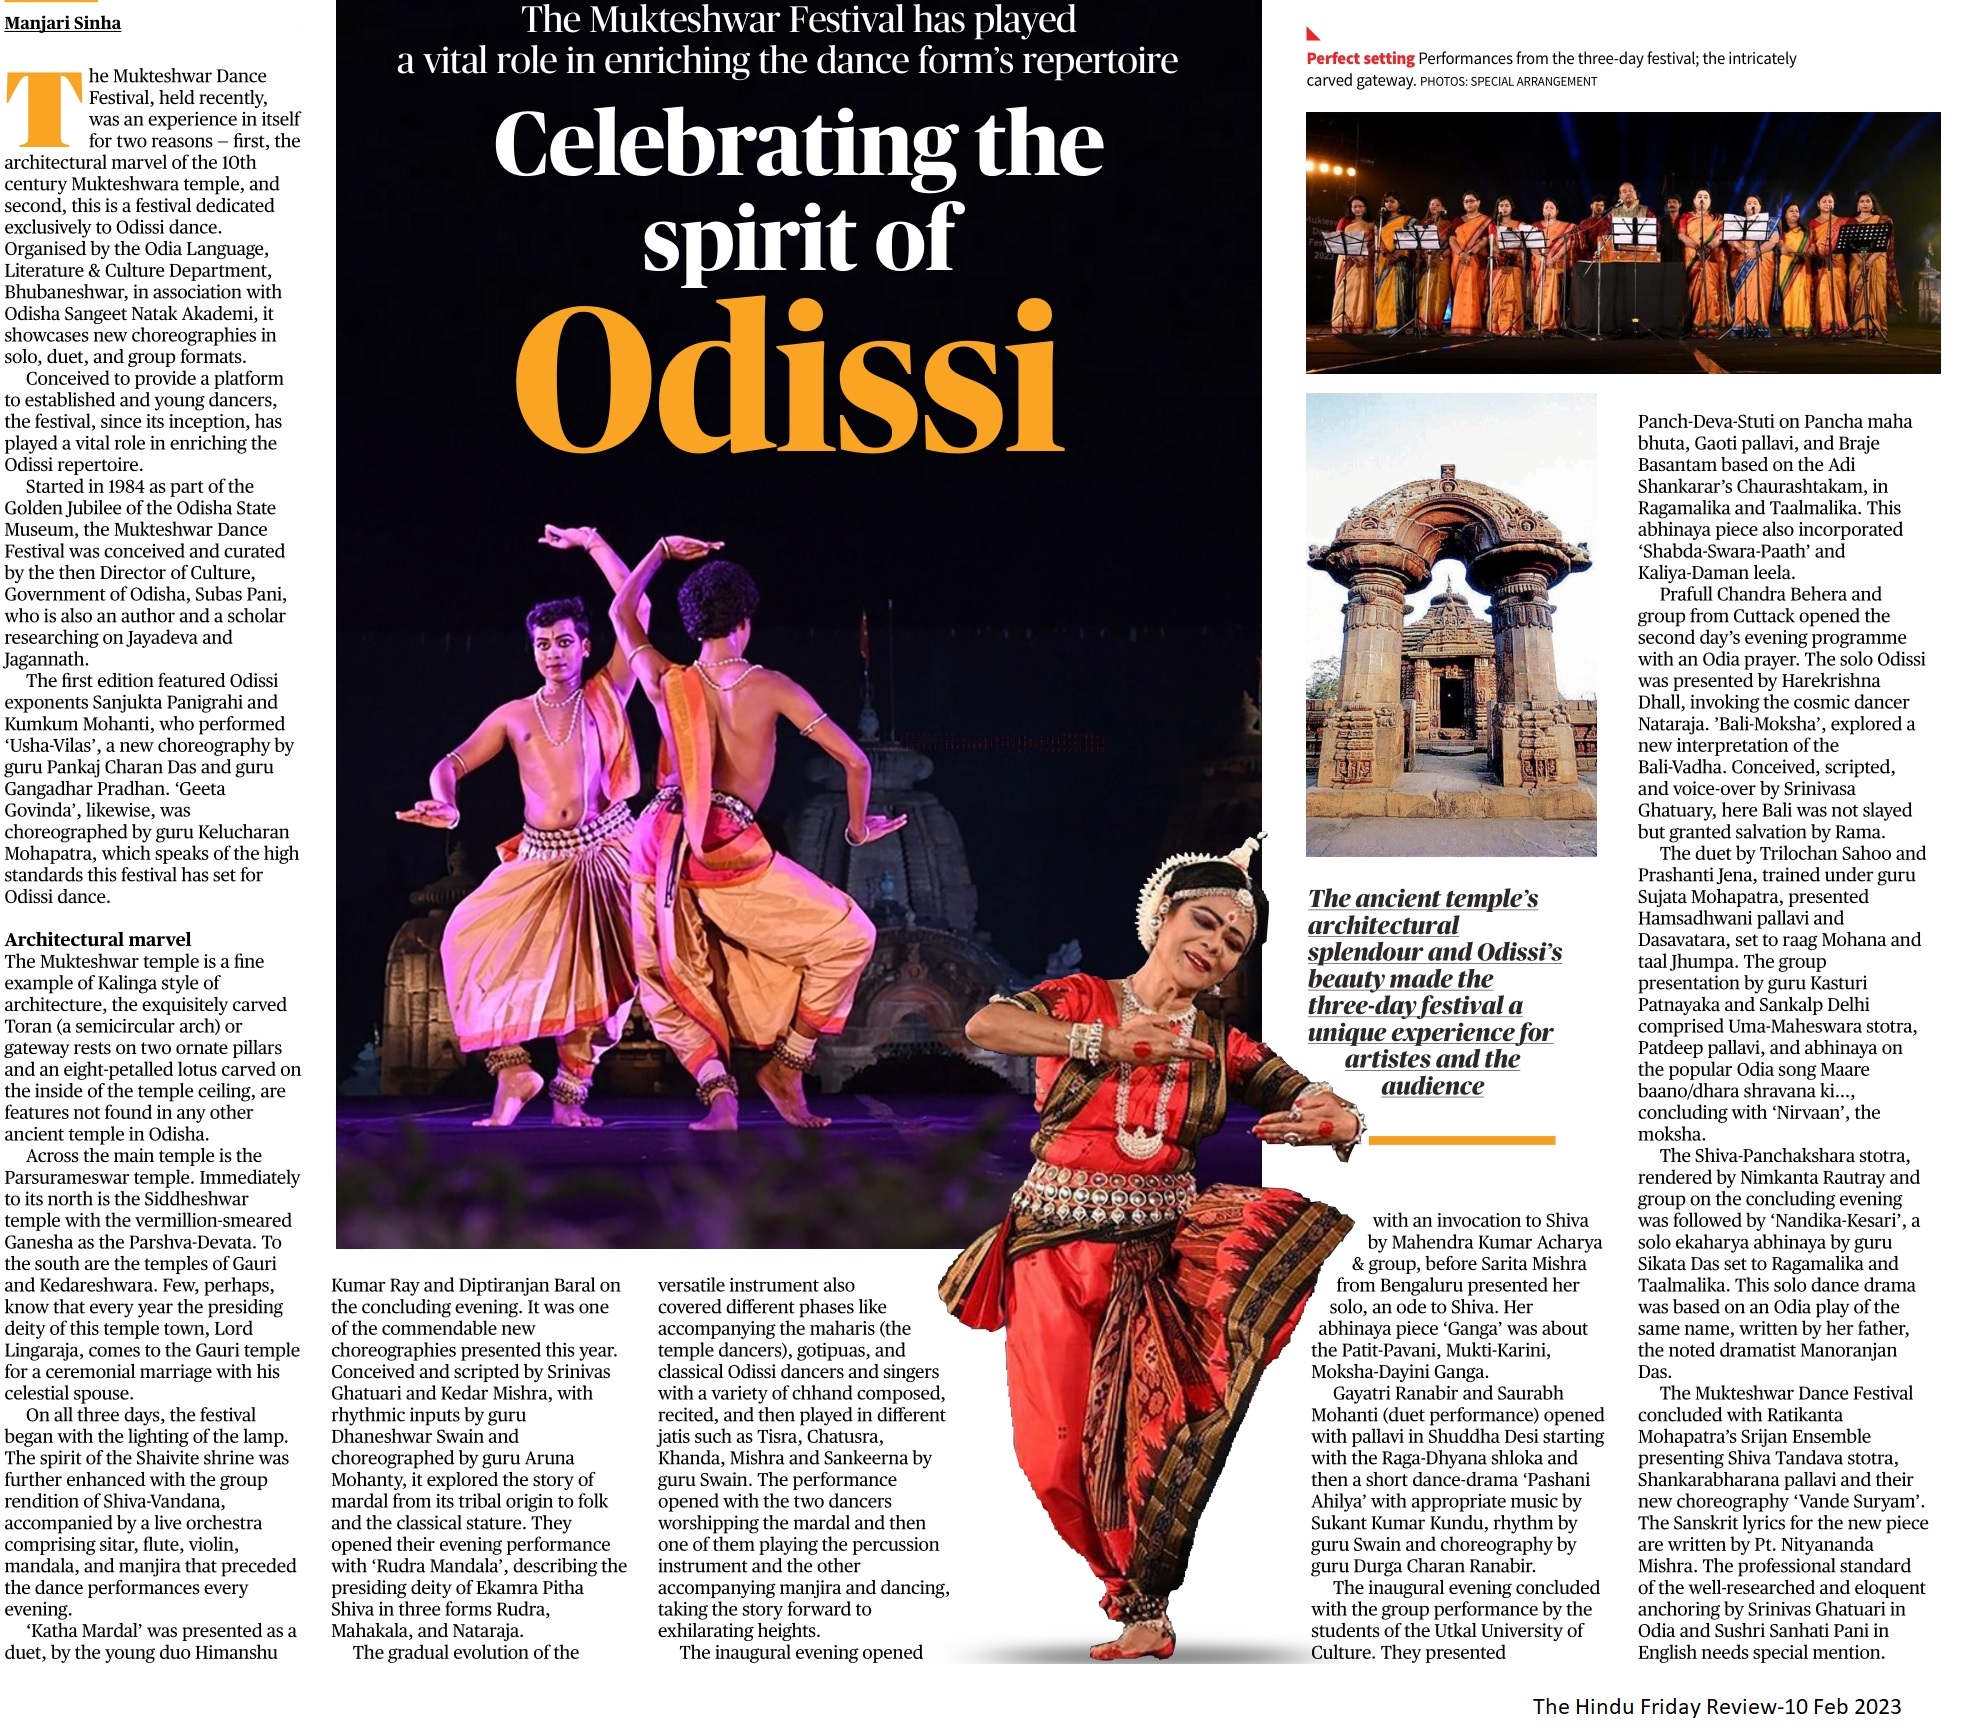 Celebrating the spirit of Odissi - Manjari Sinha